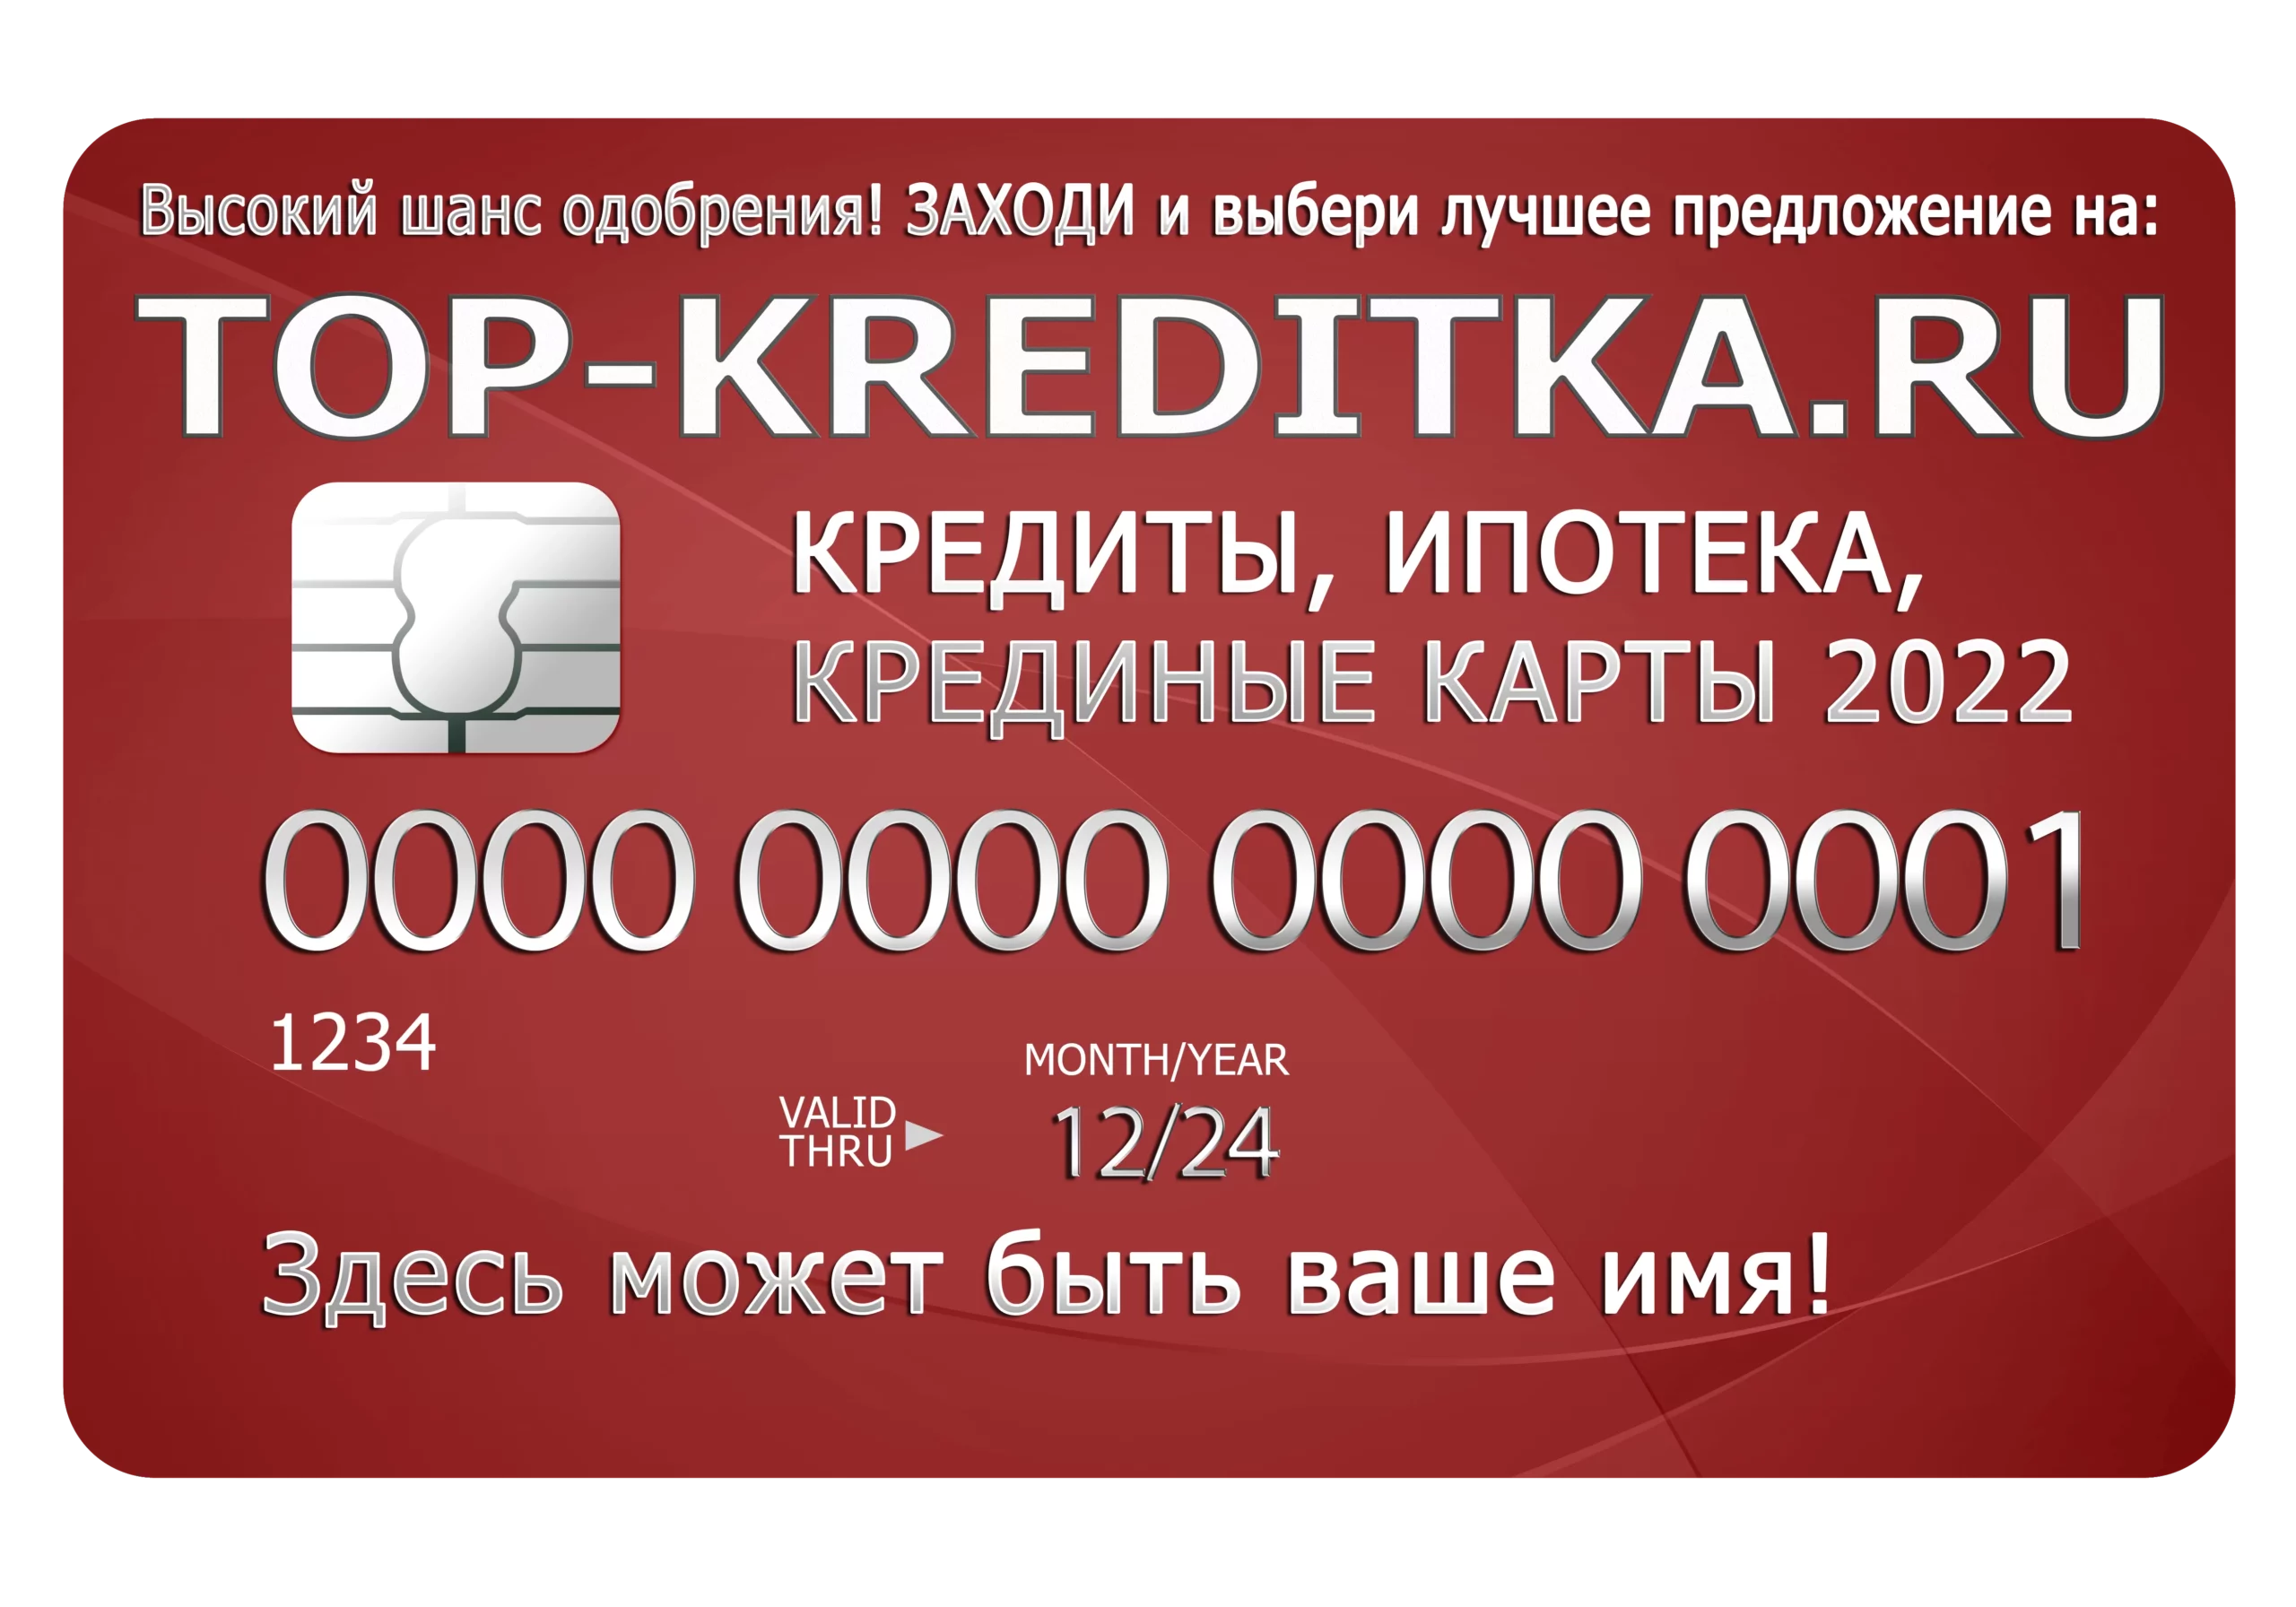 Как взять онлайн-кредит через top-kreditka.ru и вовремя погасить?